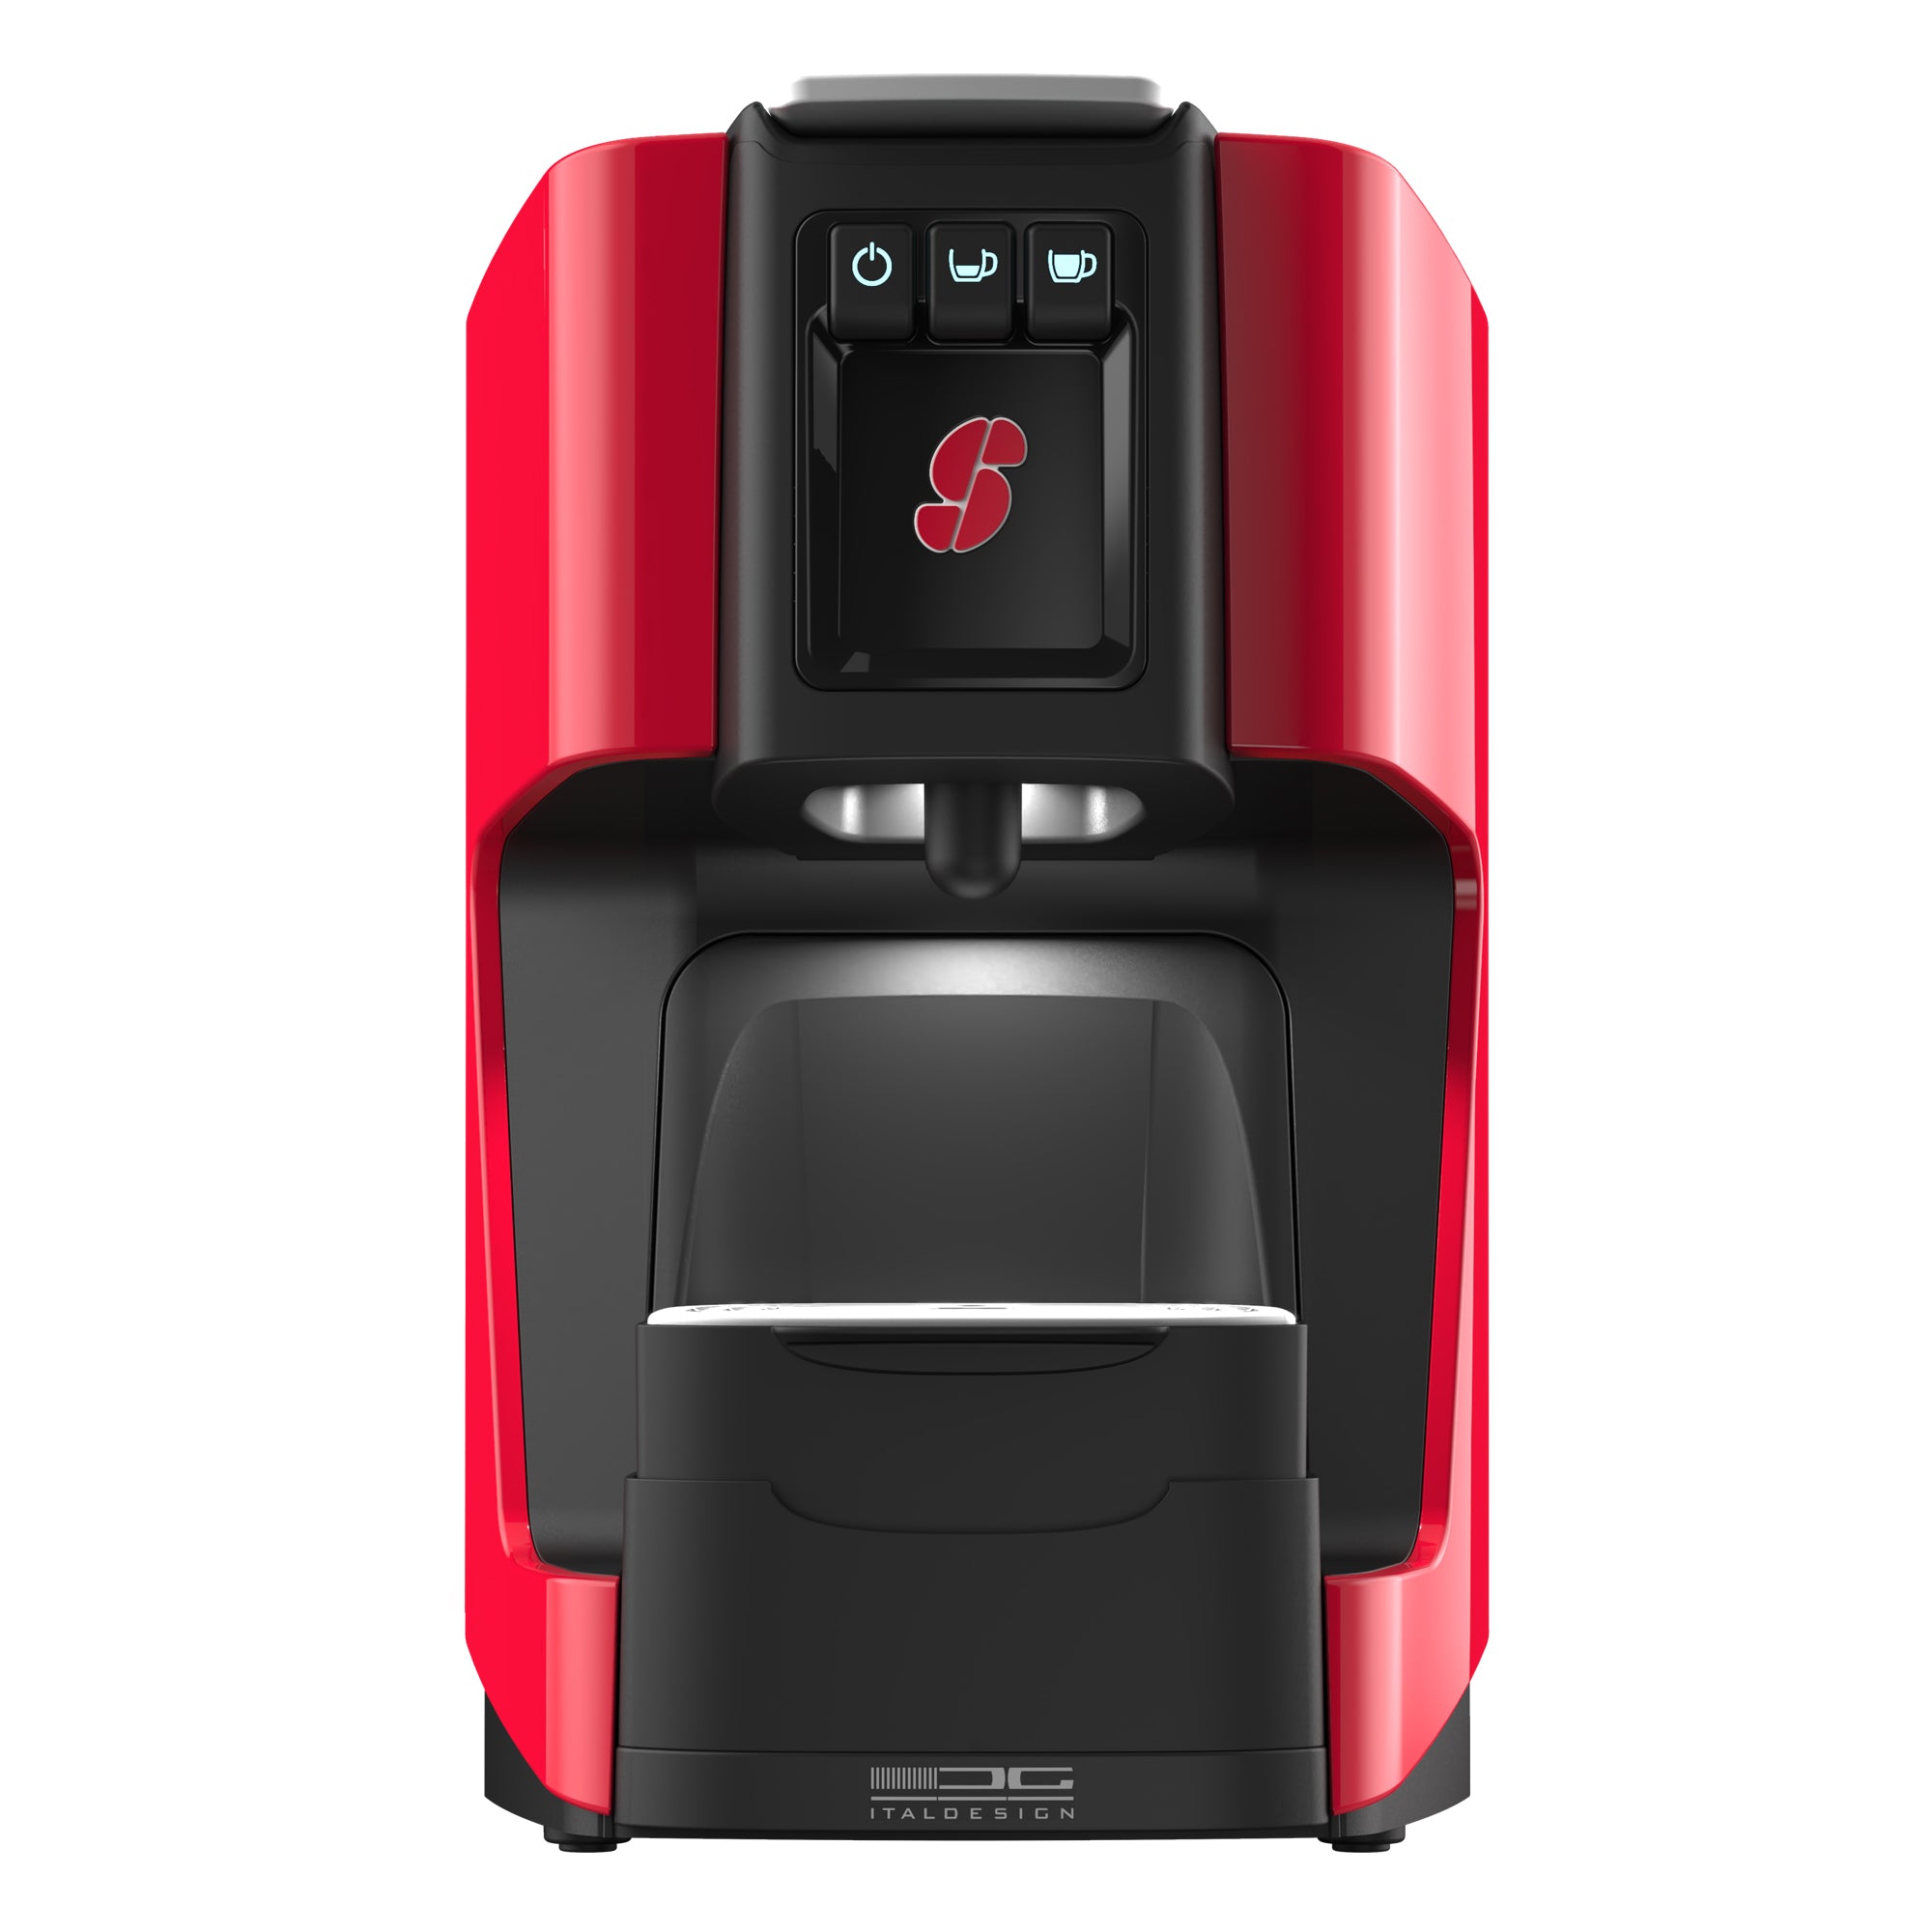 essse-caffe-macchina-caffe-s20-rossa-essse-caffe